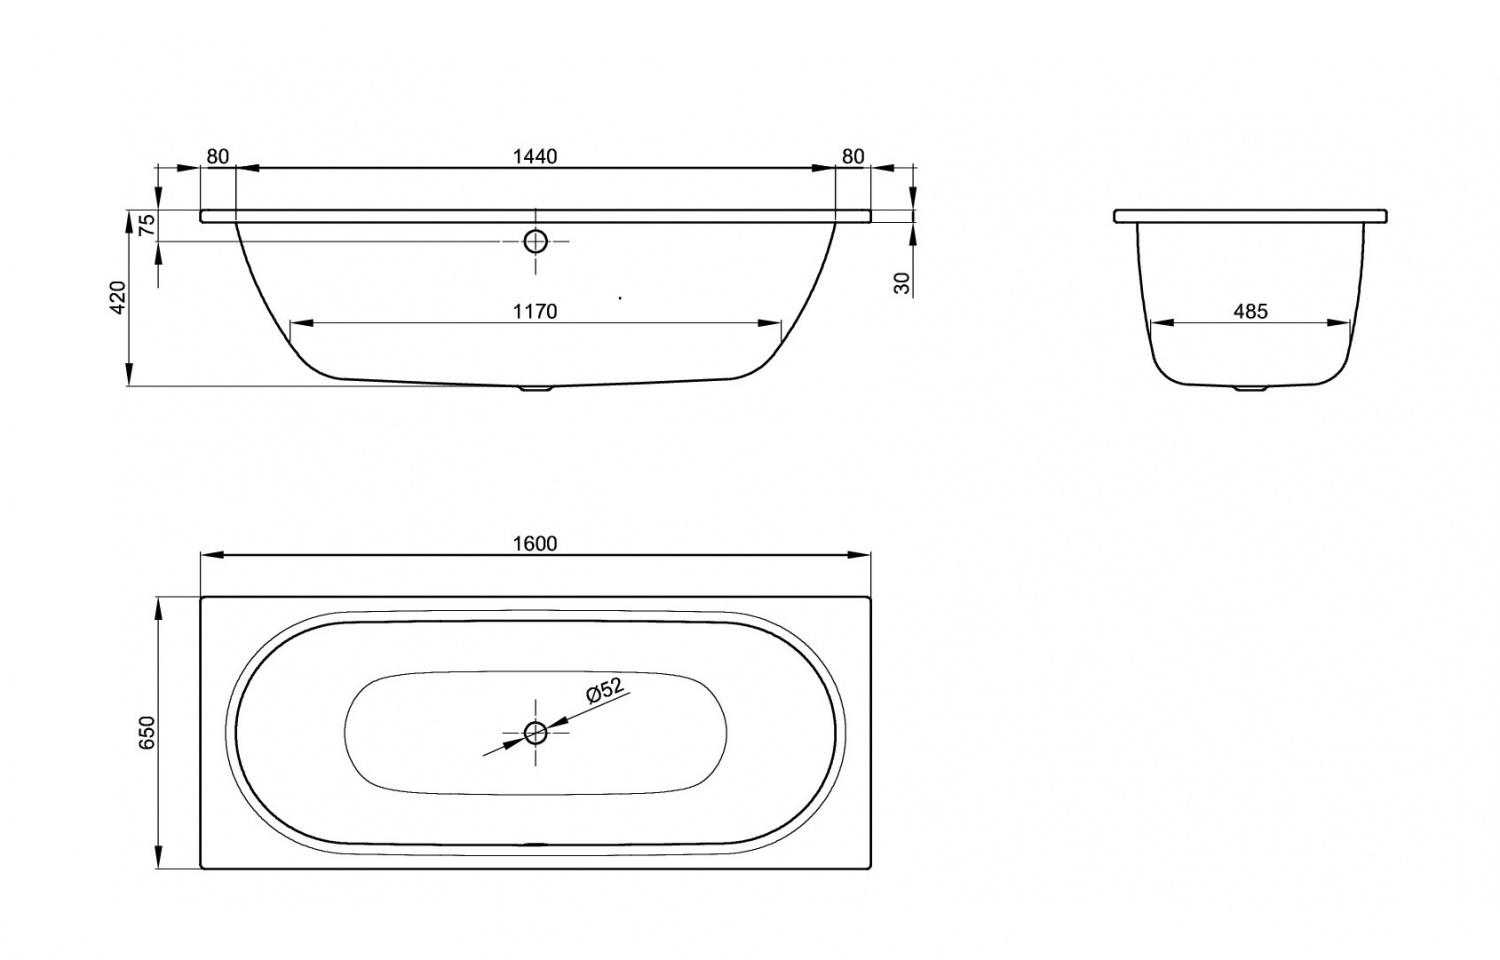 Стальная ванна Bette Starlet 160x65 см, 2540-000AR,PLUS с покрытием Glasur® Plus